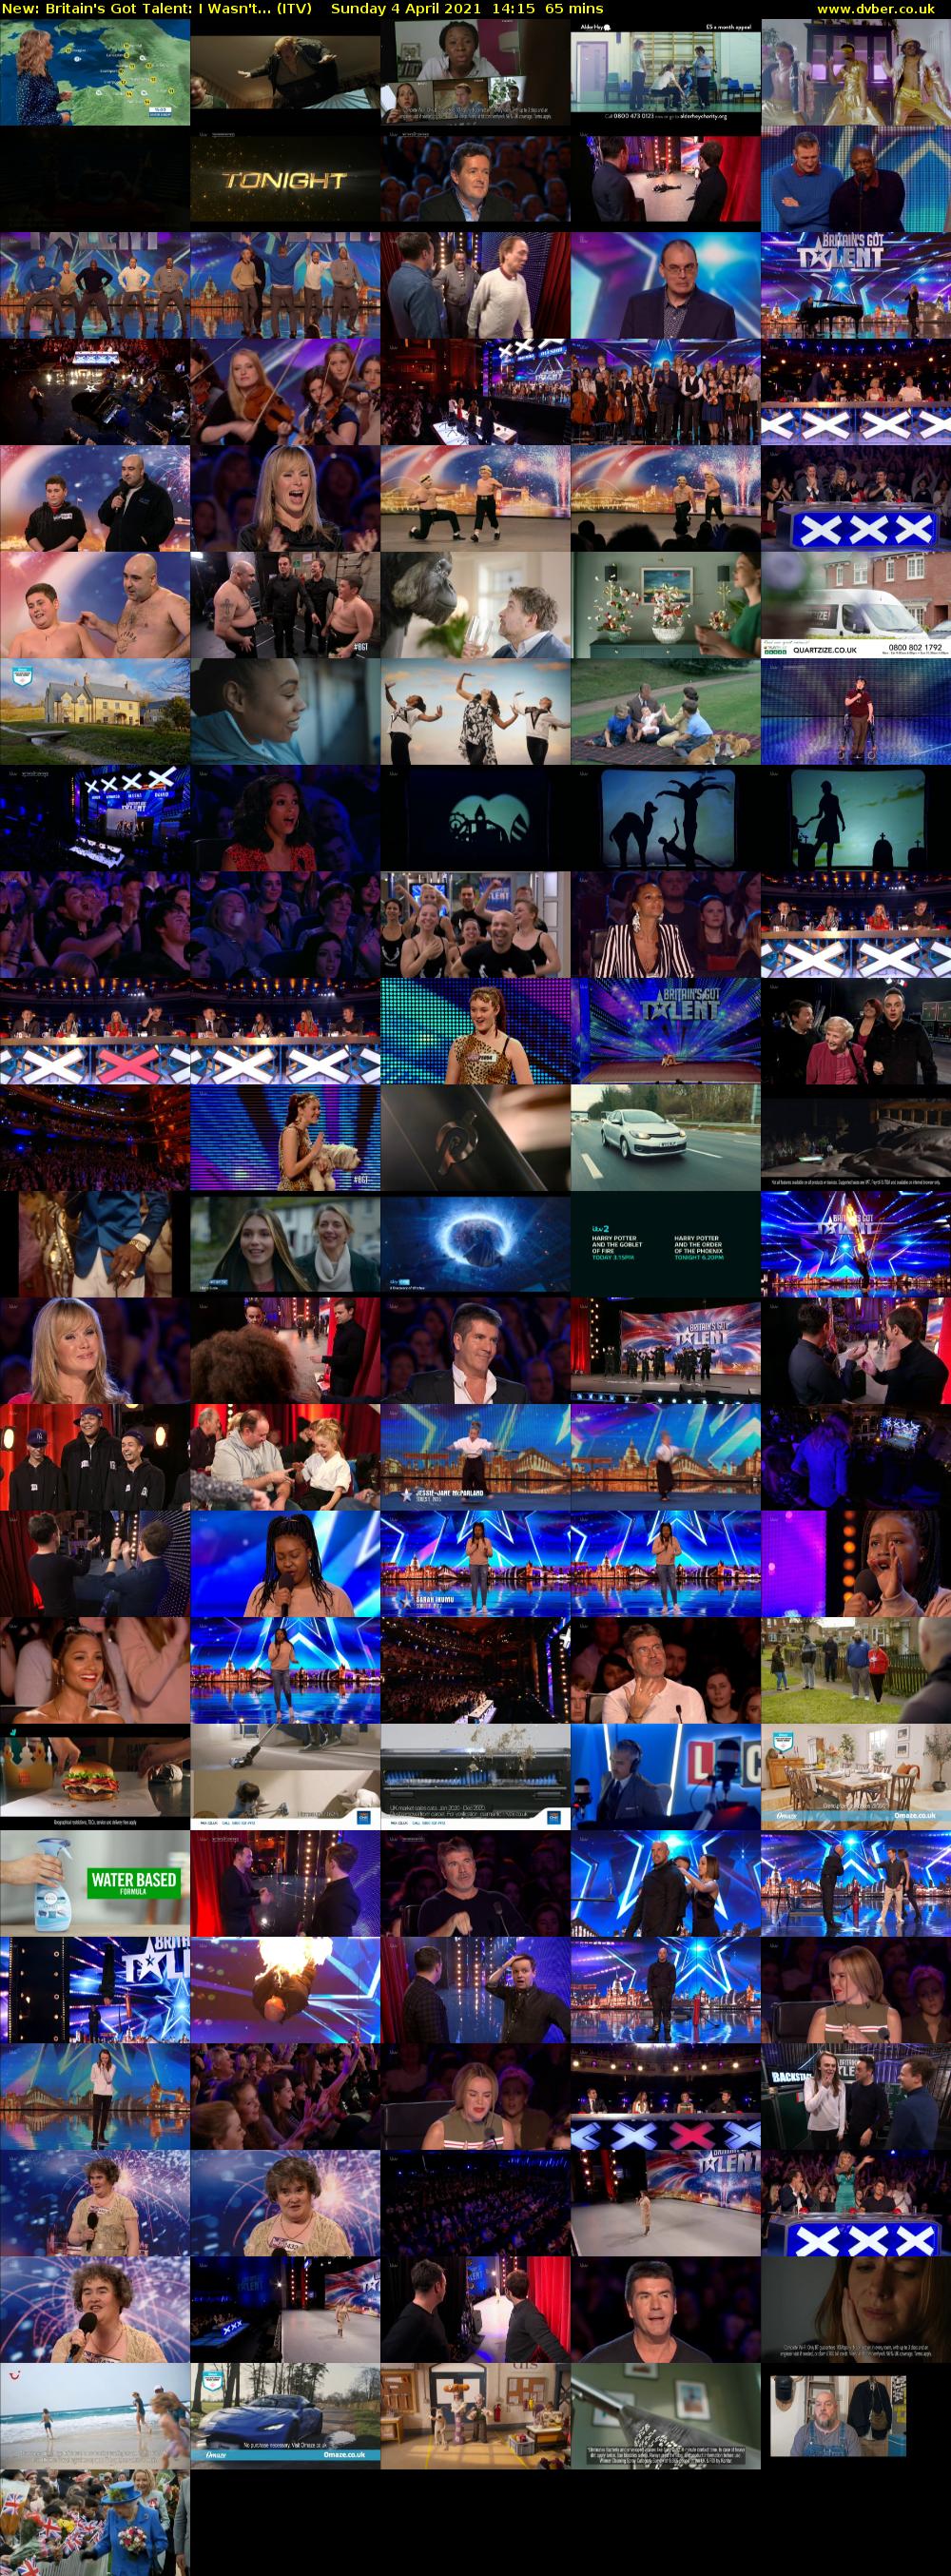 Britain's Got Talent: I Wasn't... (ITV) Sunday 4 April 2021 14:15 - 15:20